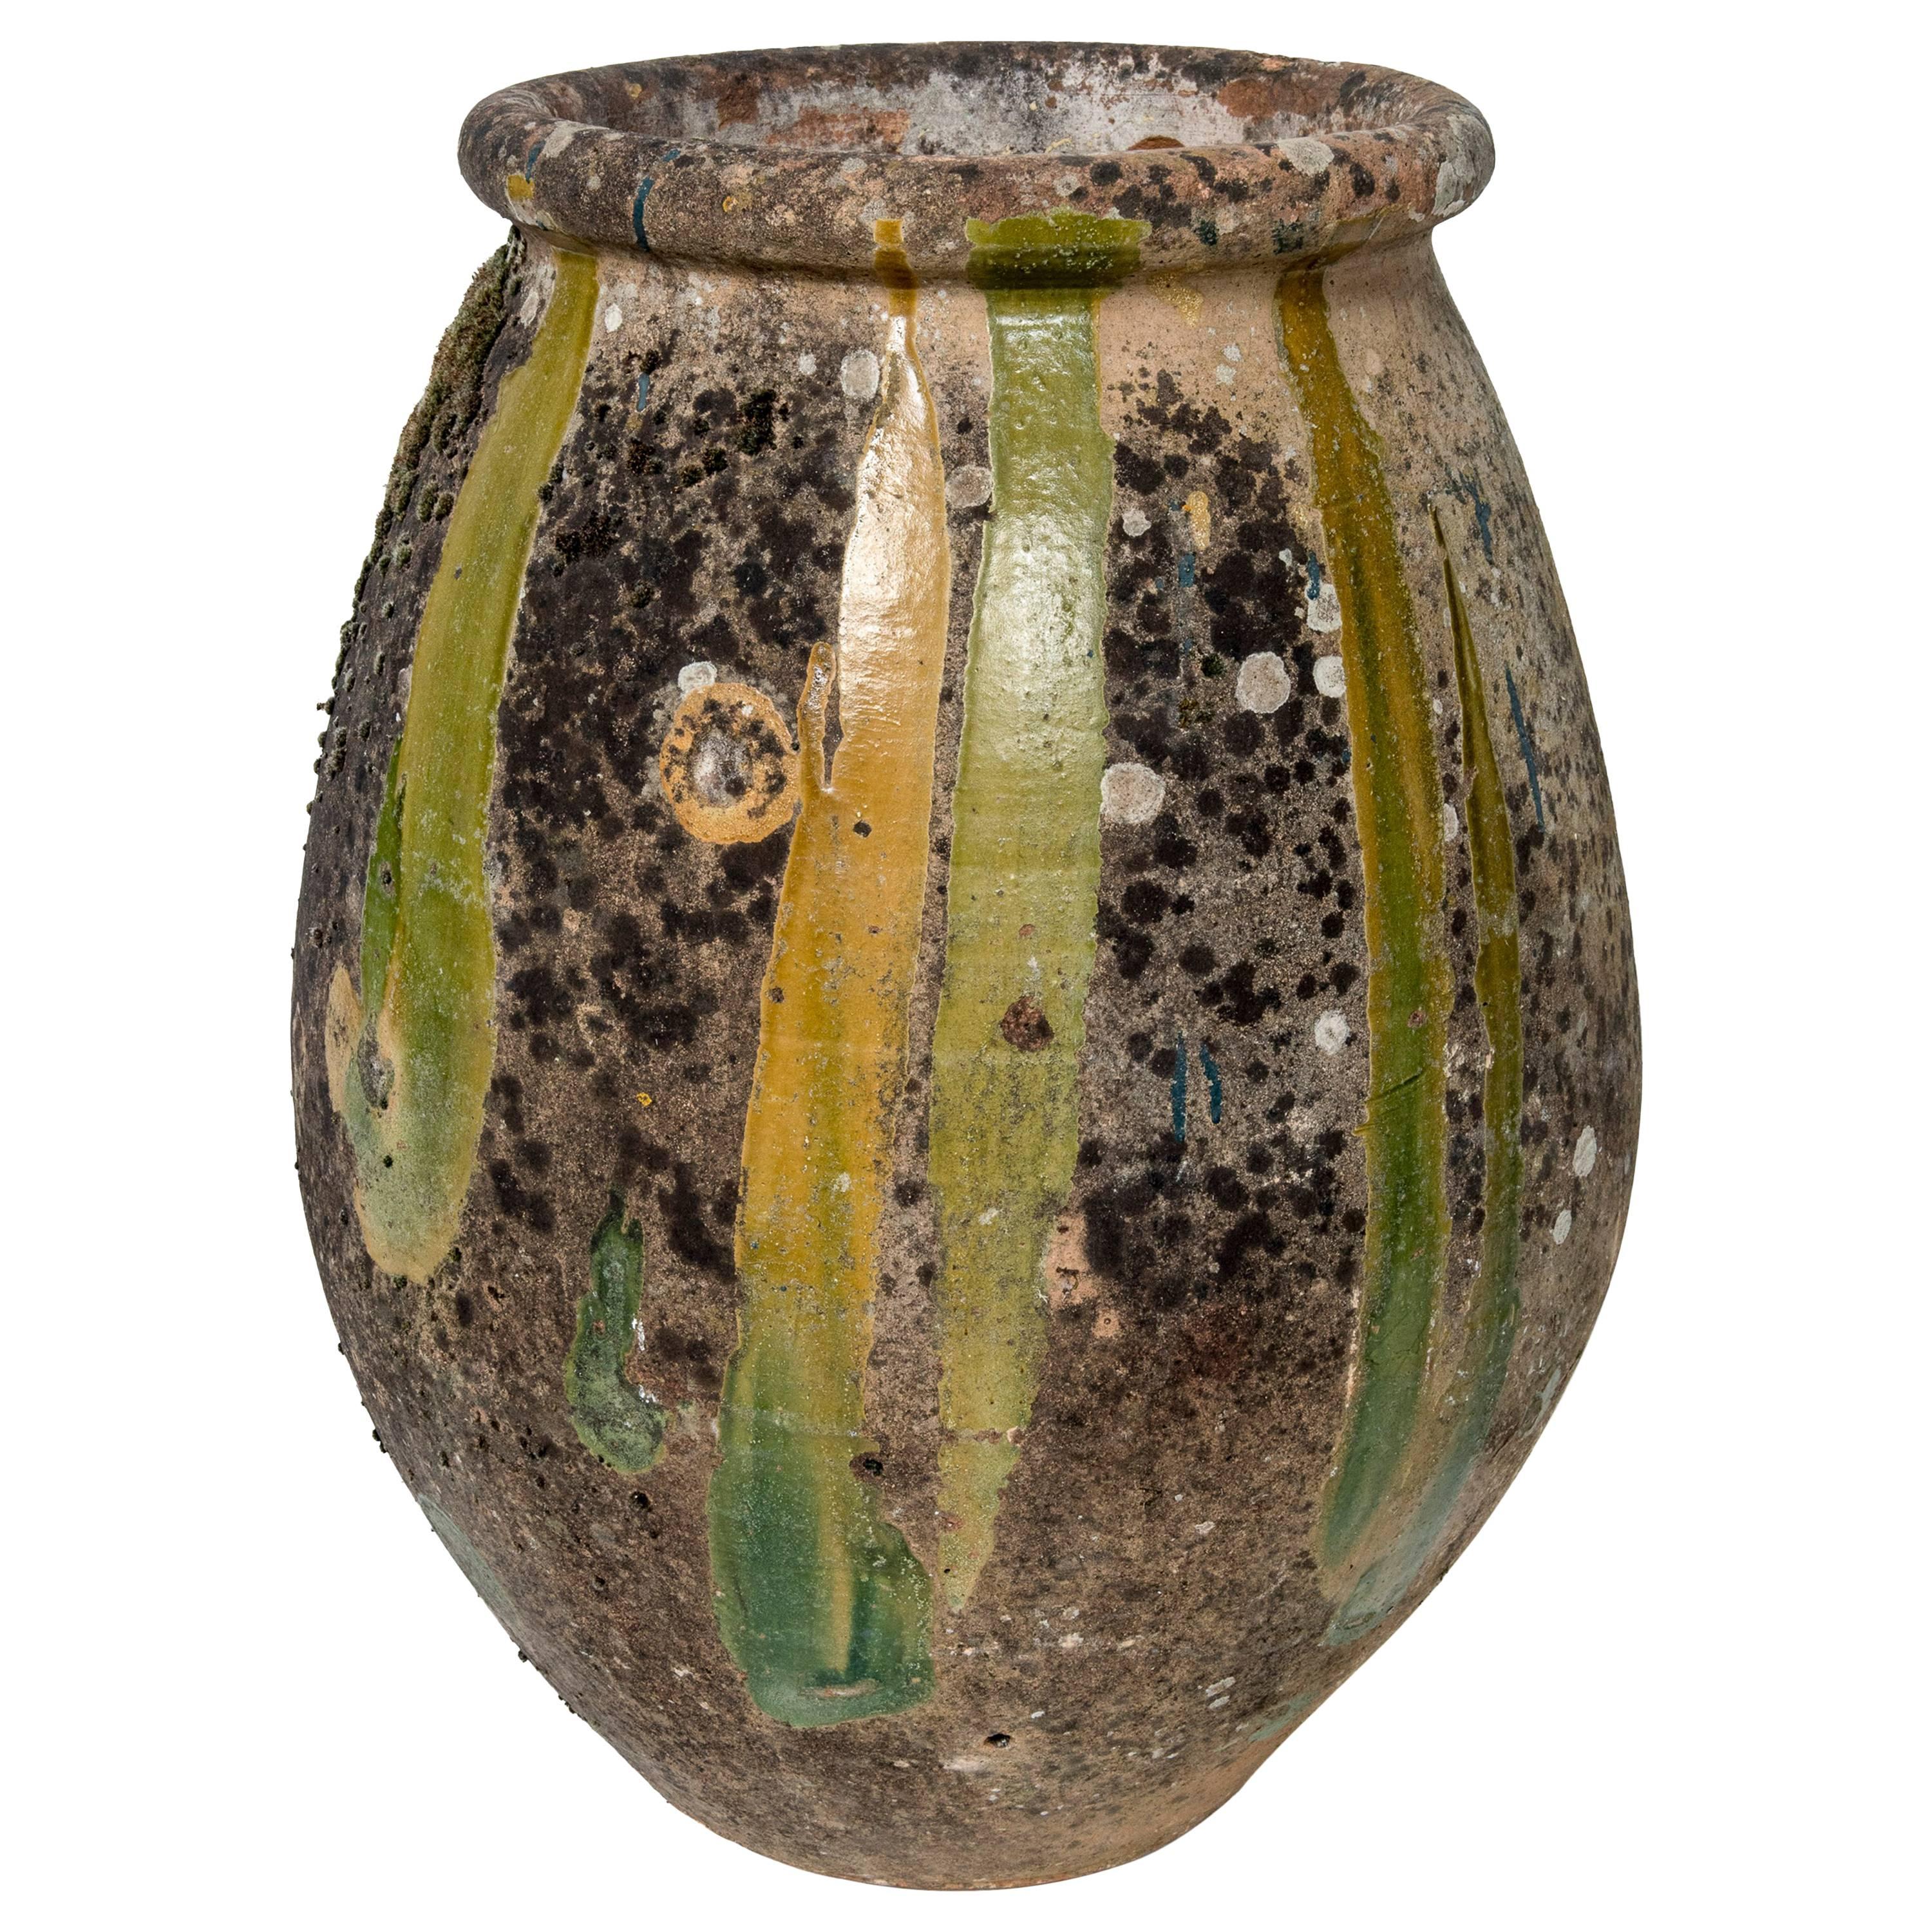 Biot Jar with Green Glaze